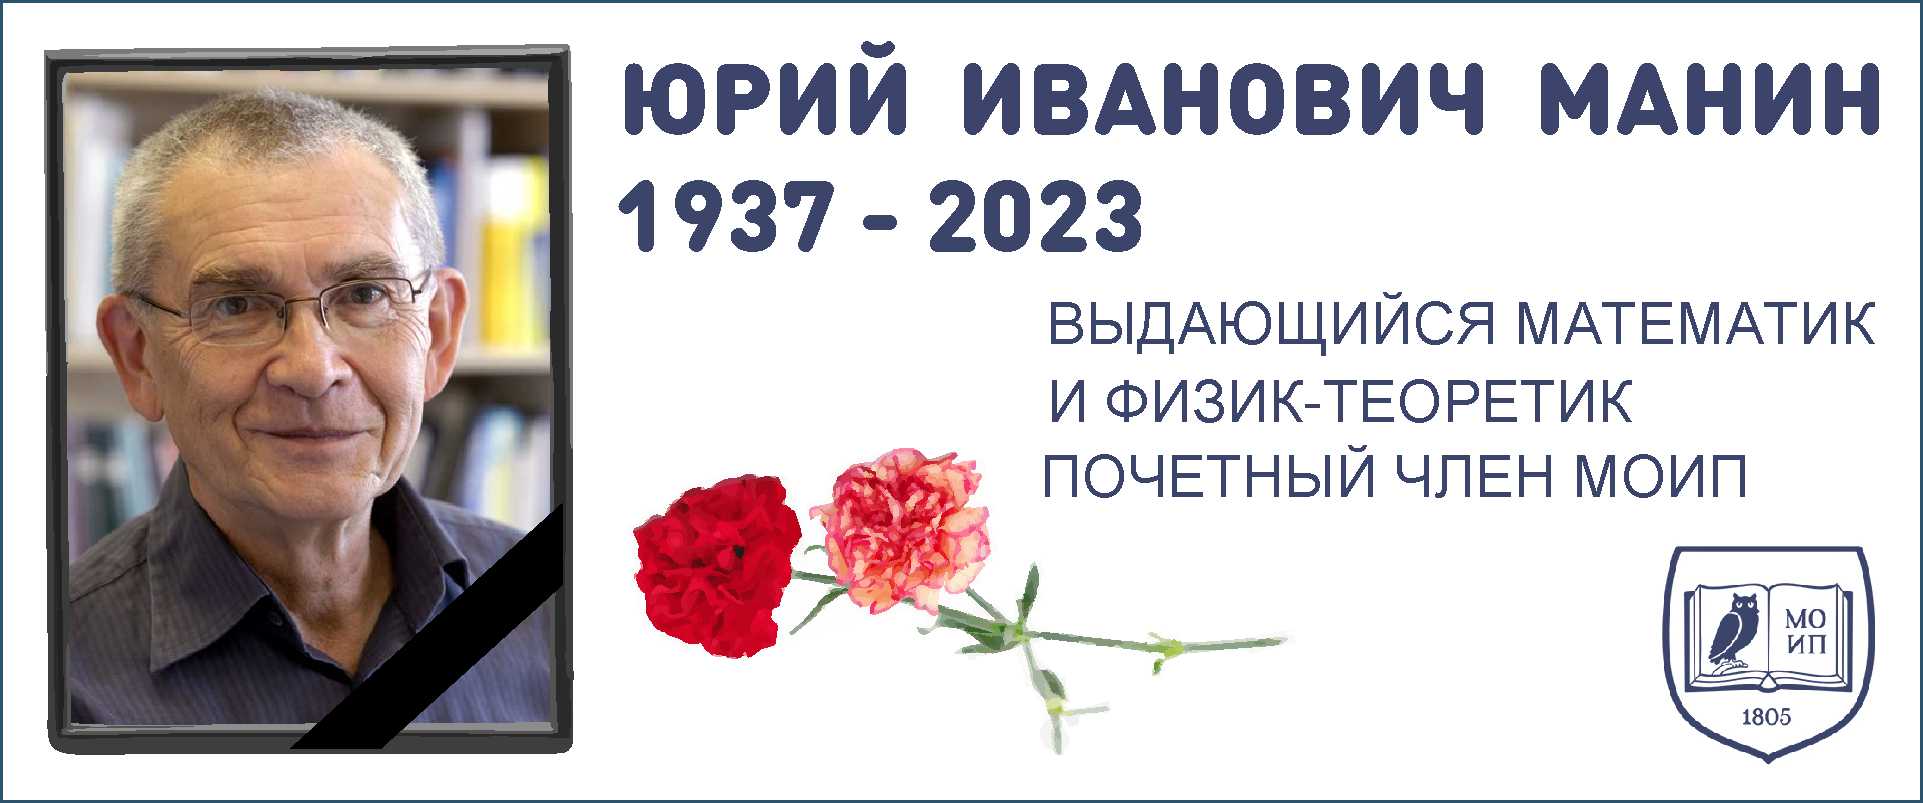 Юрий Иванович МАНИН (1937 - 2023)